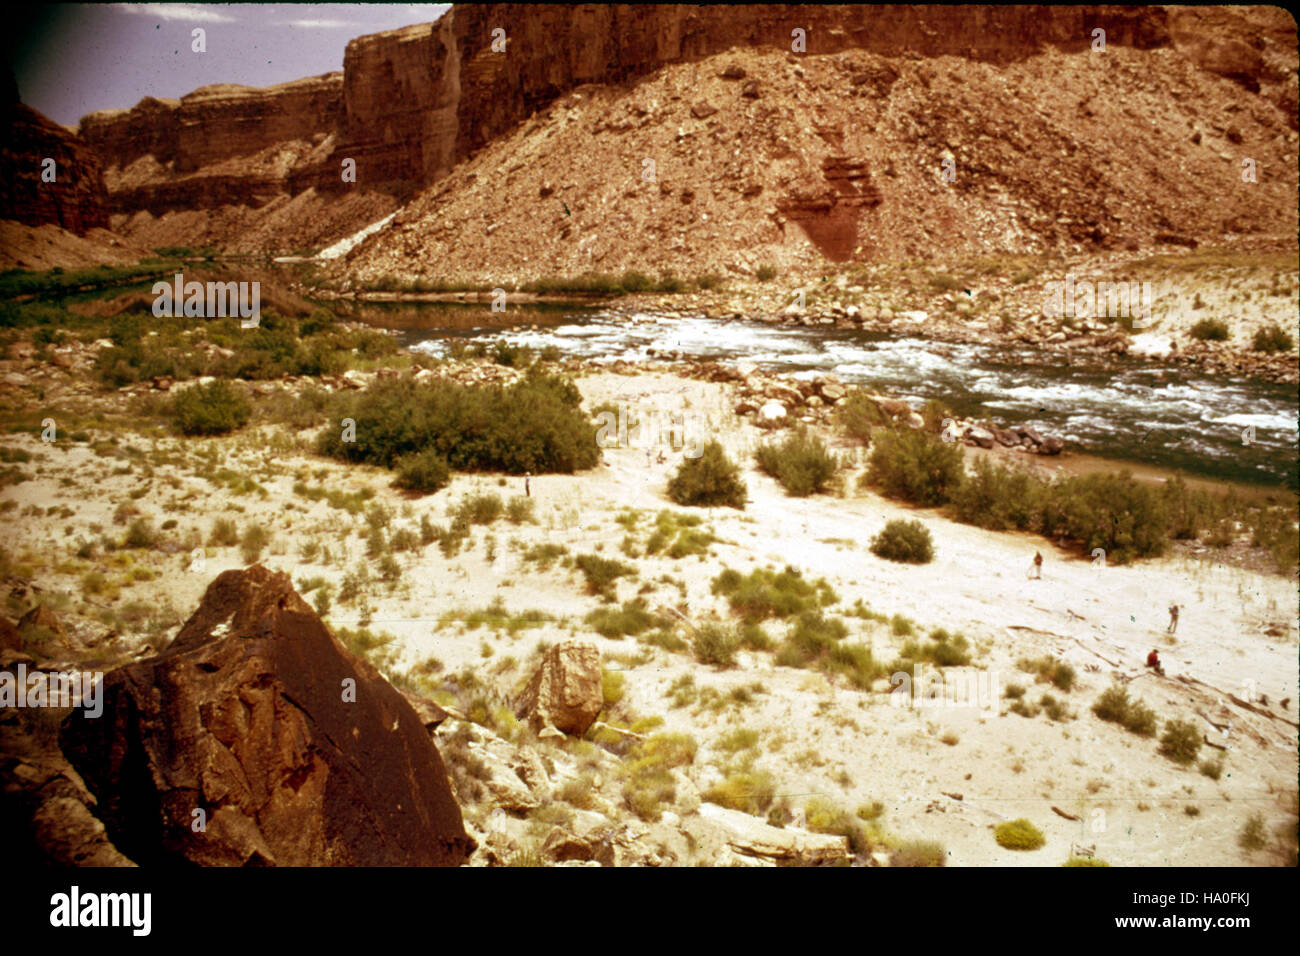 Grand Canyon nps R7.9U 16563667871 - Derecho - badger creek 7.9 (superior) Foto de stock